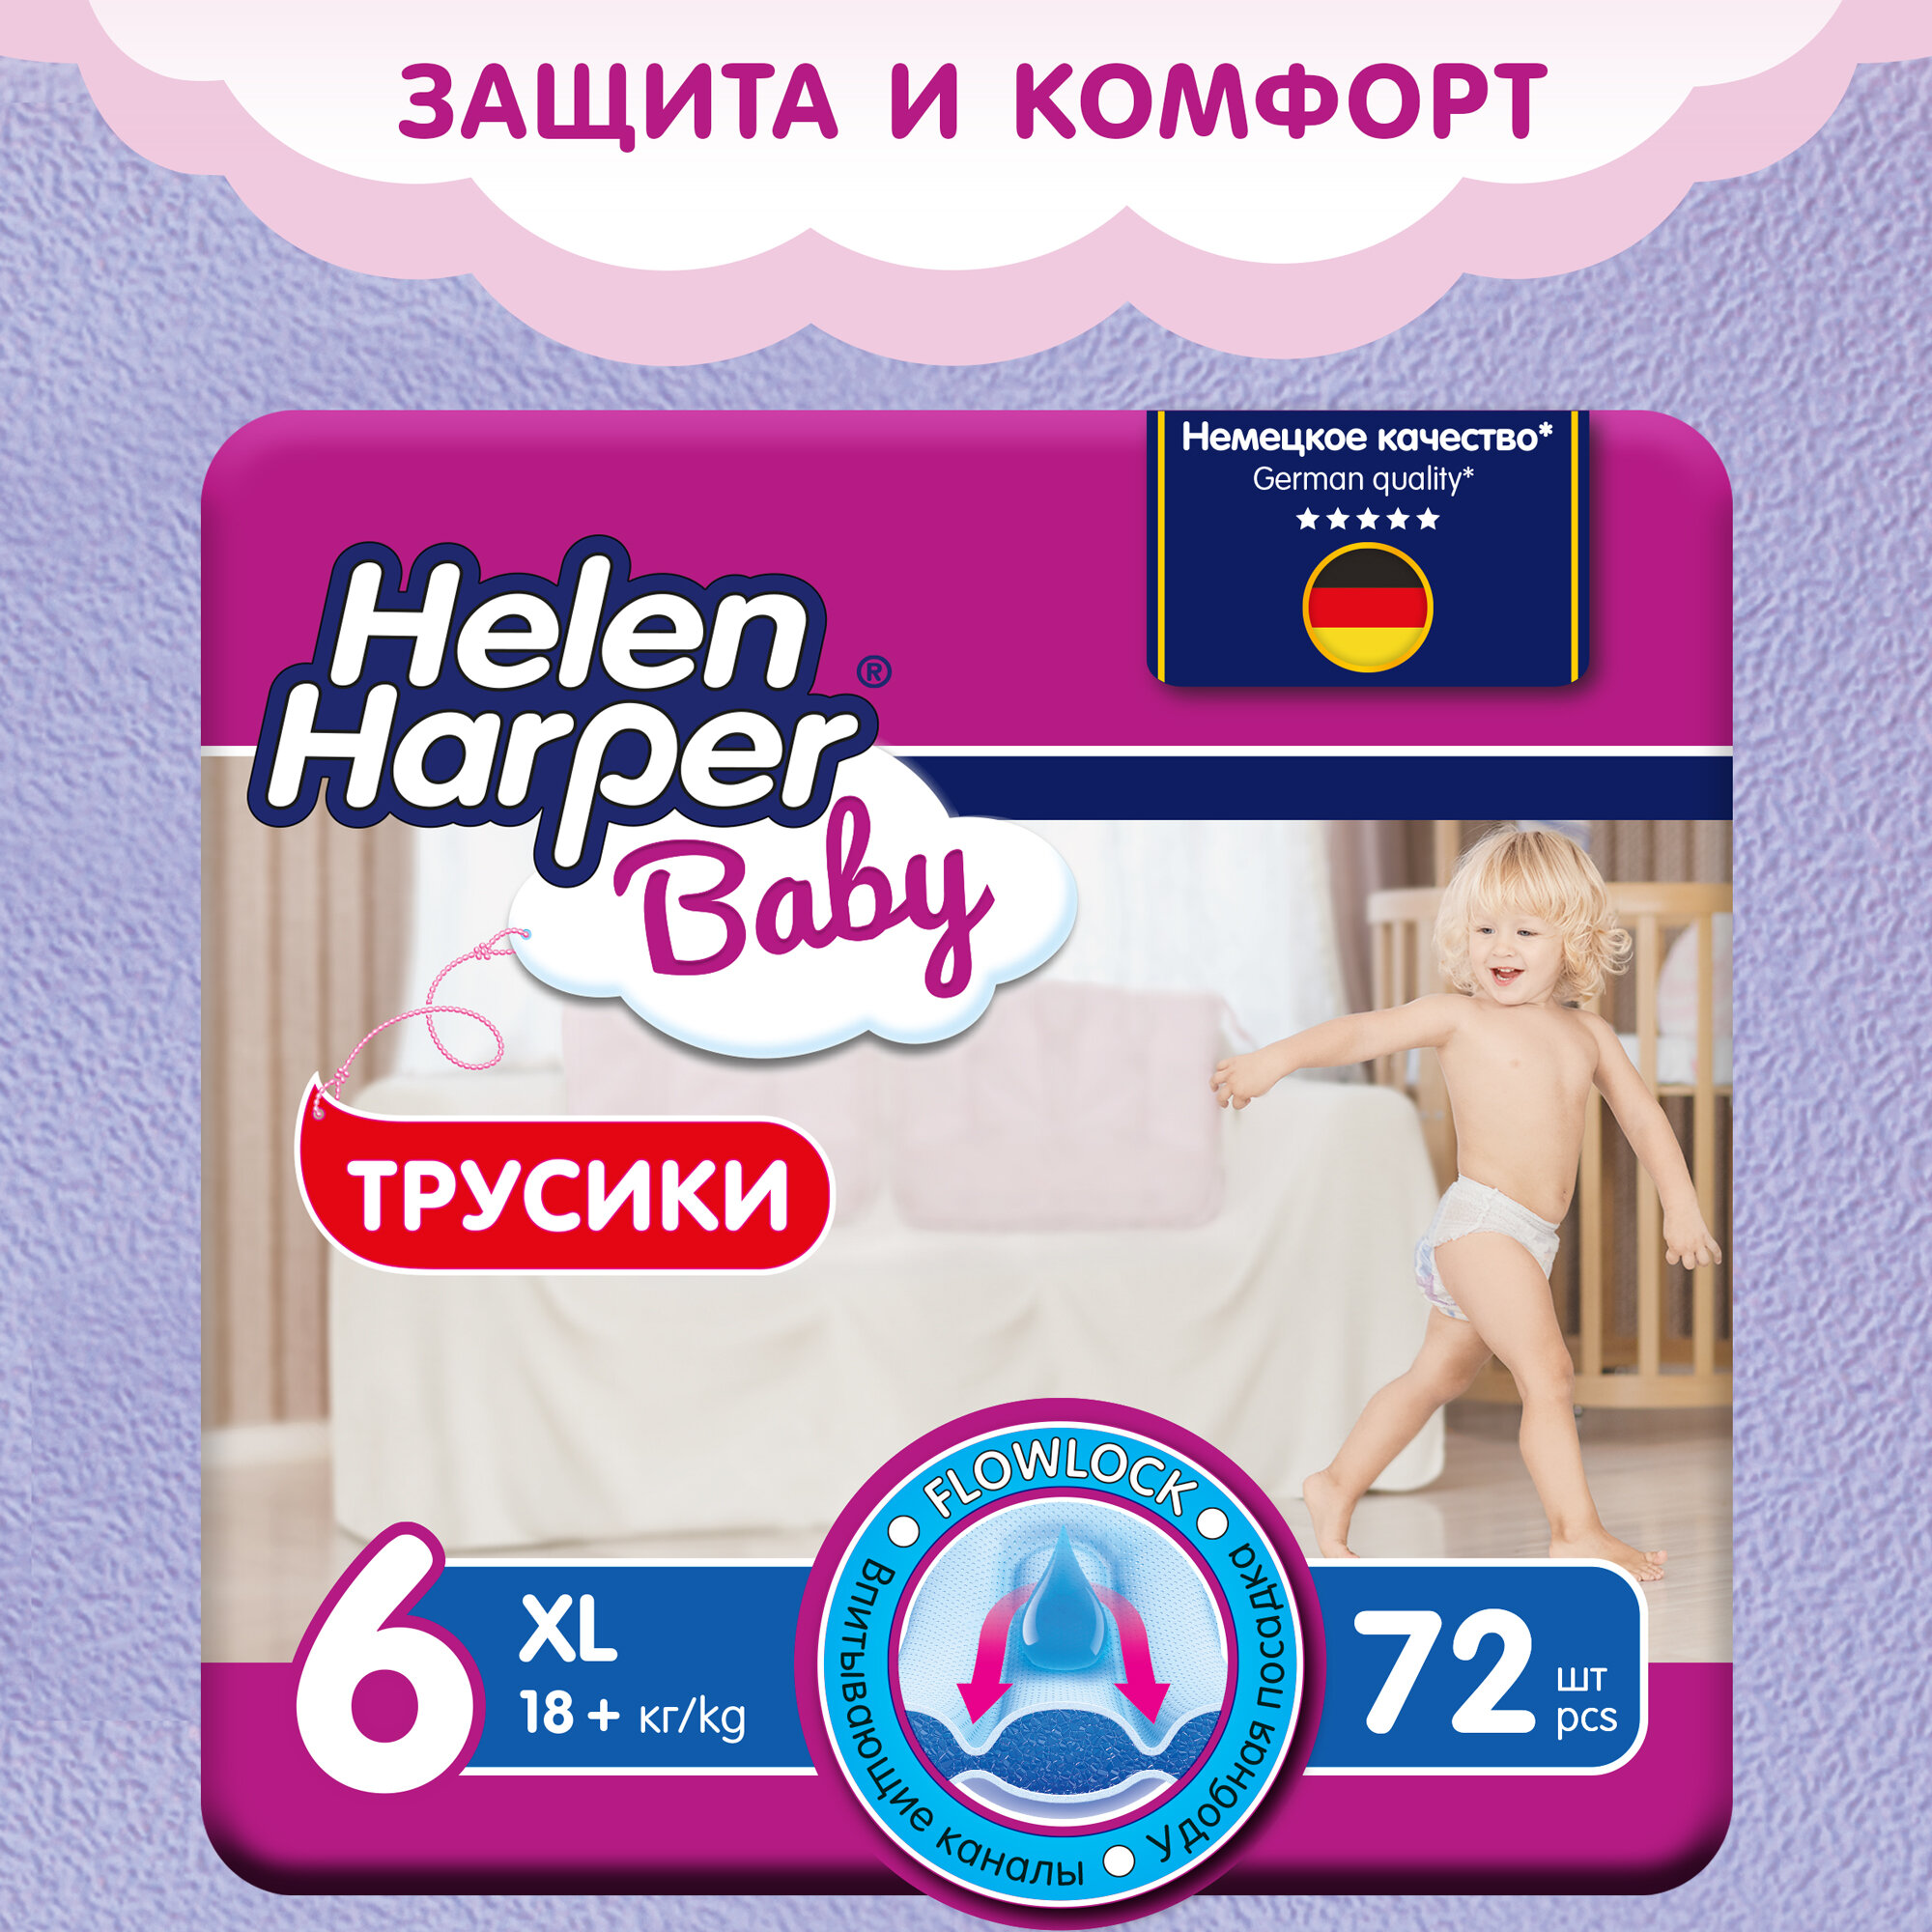 Детские подгузники-трусики Helen Harper Baby, размер 6, вес от 18 кг, 72 штуки